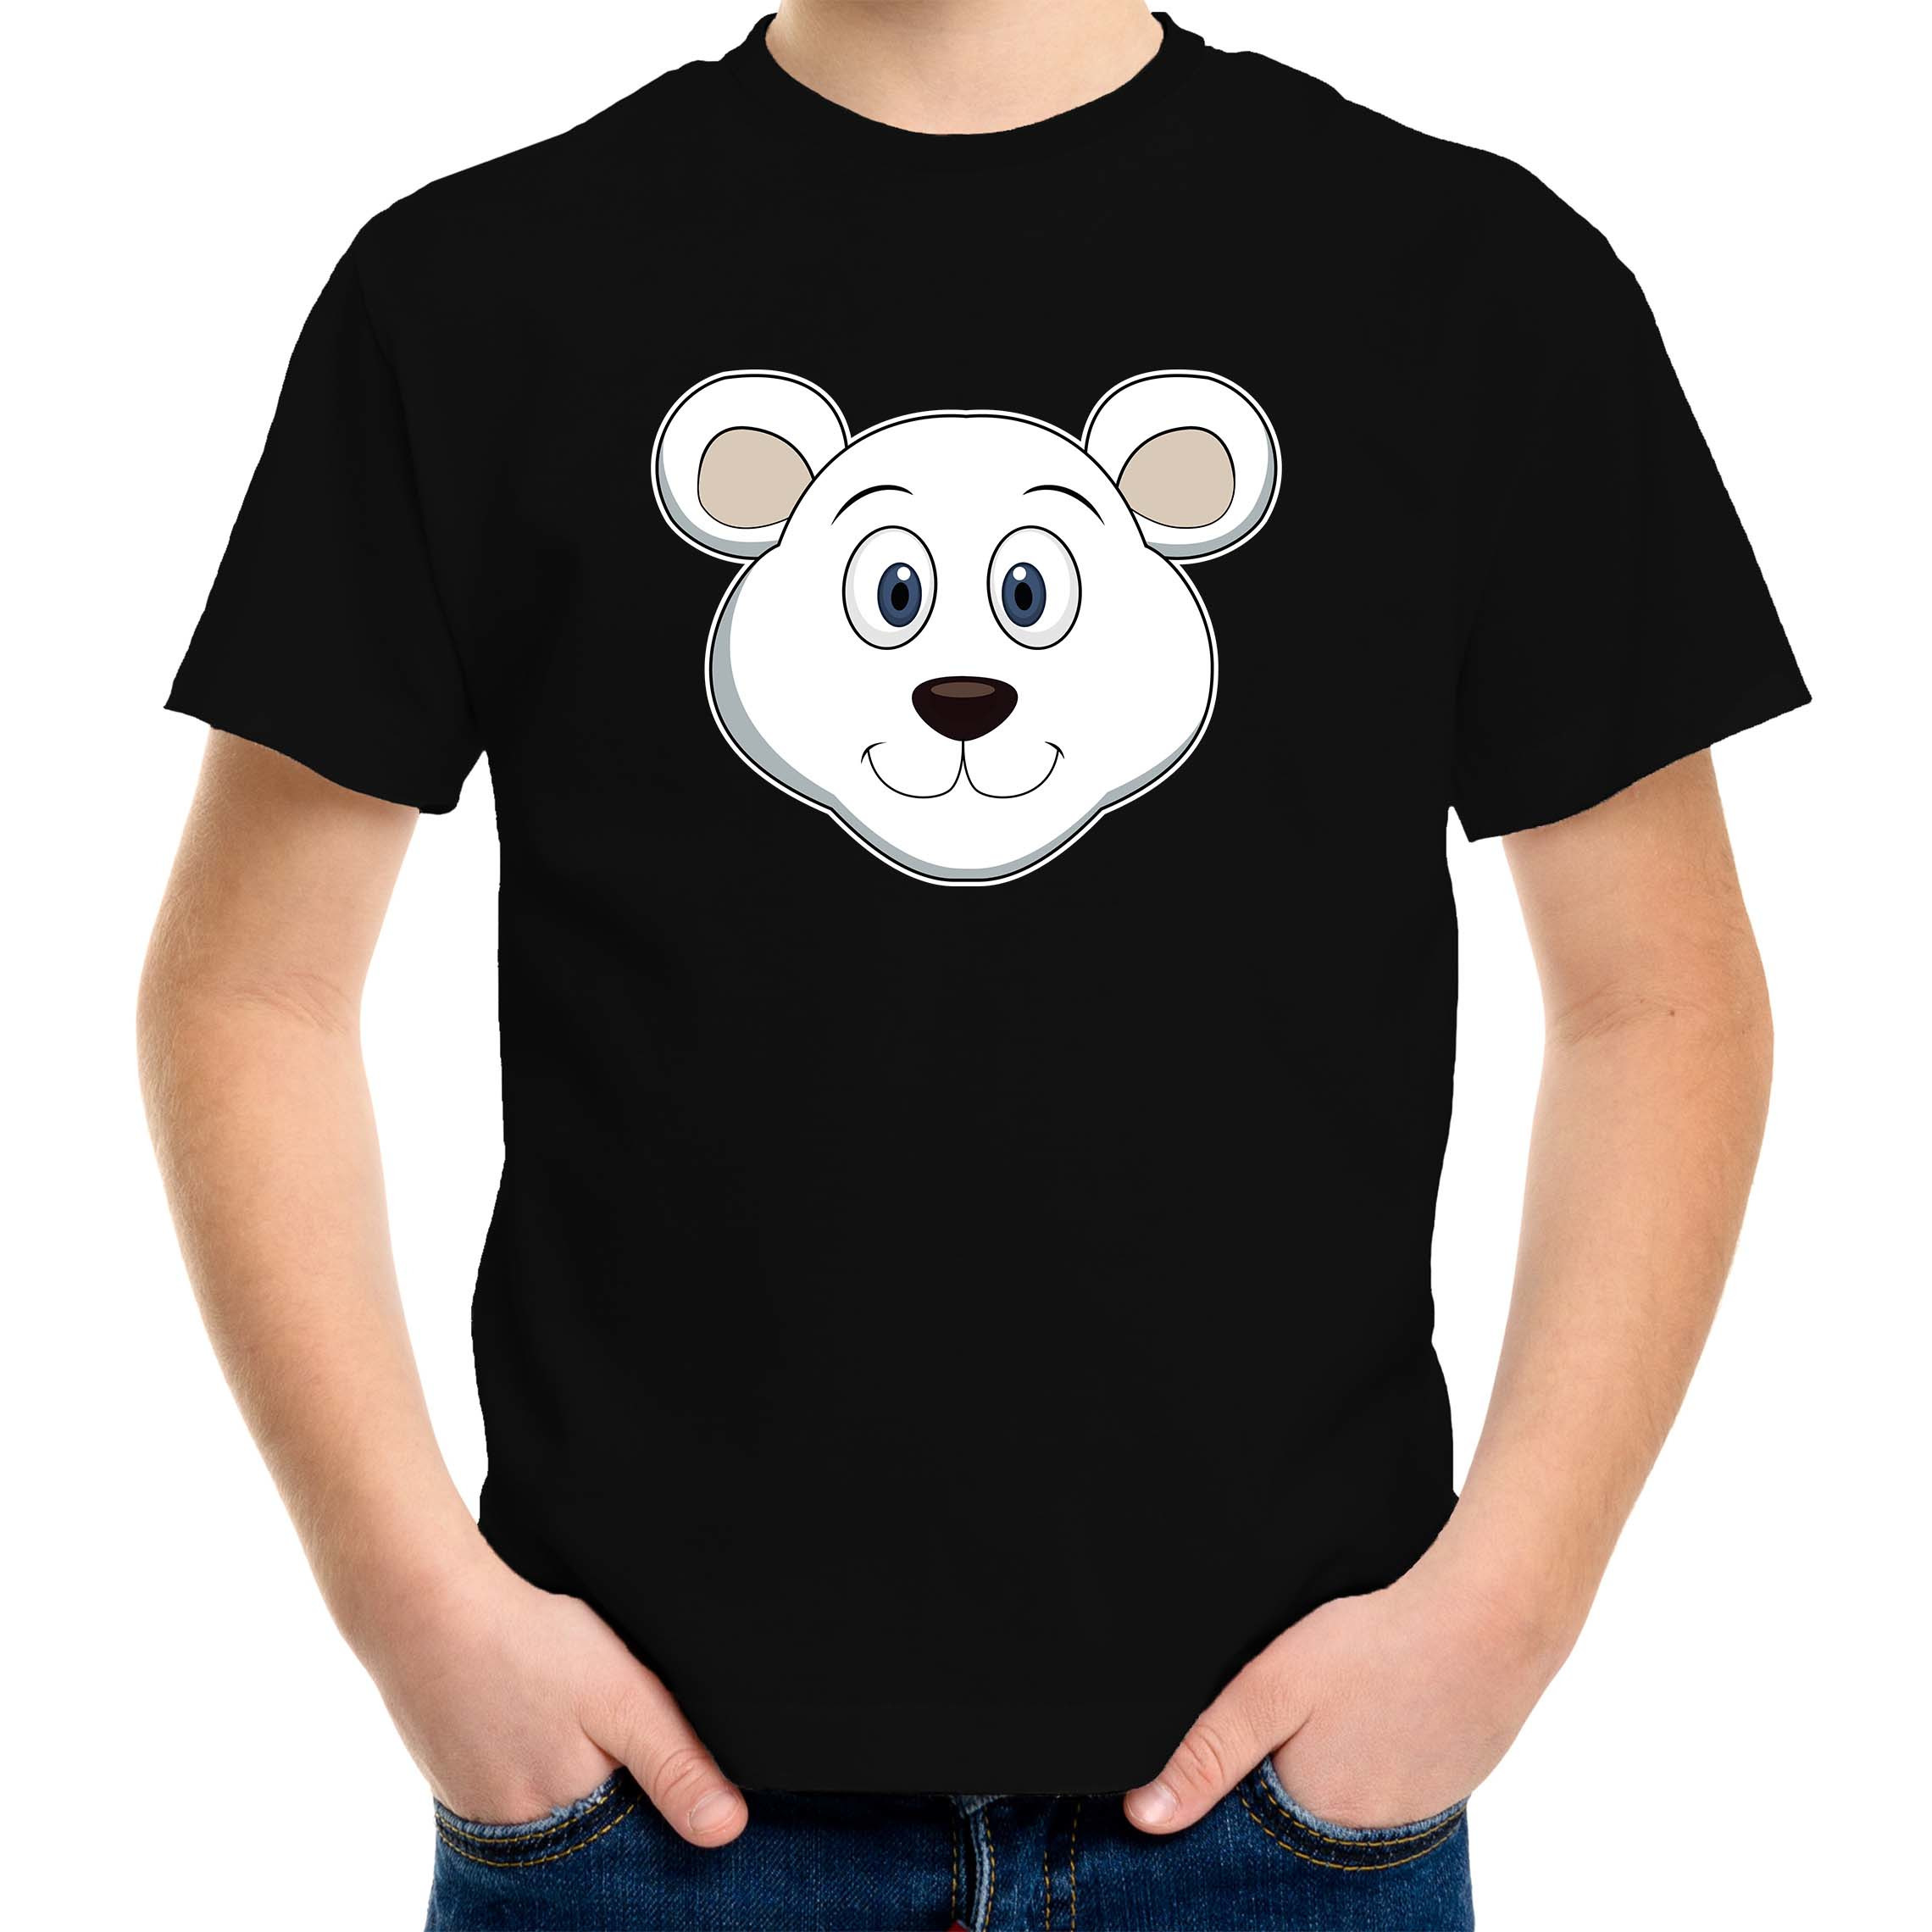 Cartoon ijsbeer t-shirt zwart voor jongens en meisjes - Cartoon dieren t-shirts kinderen